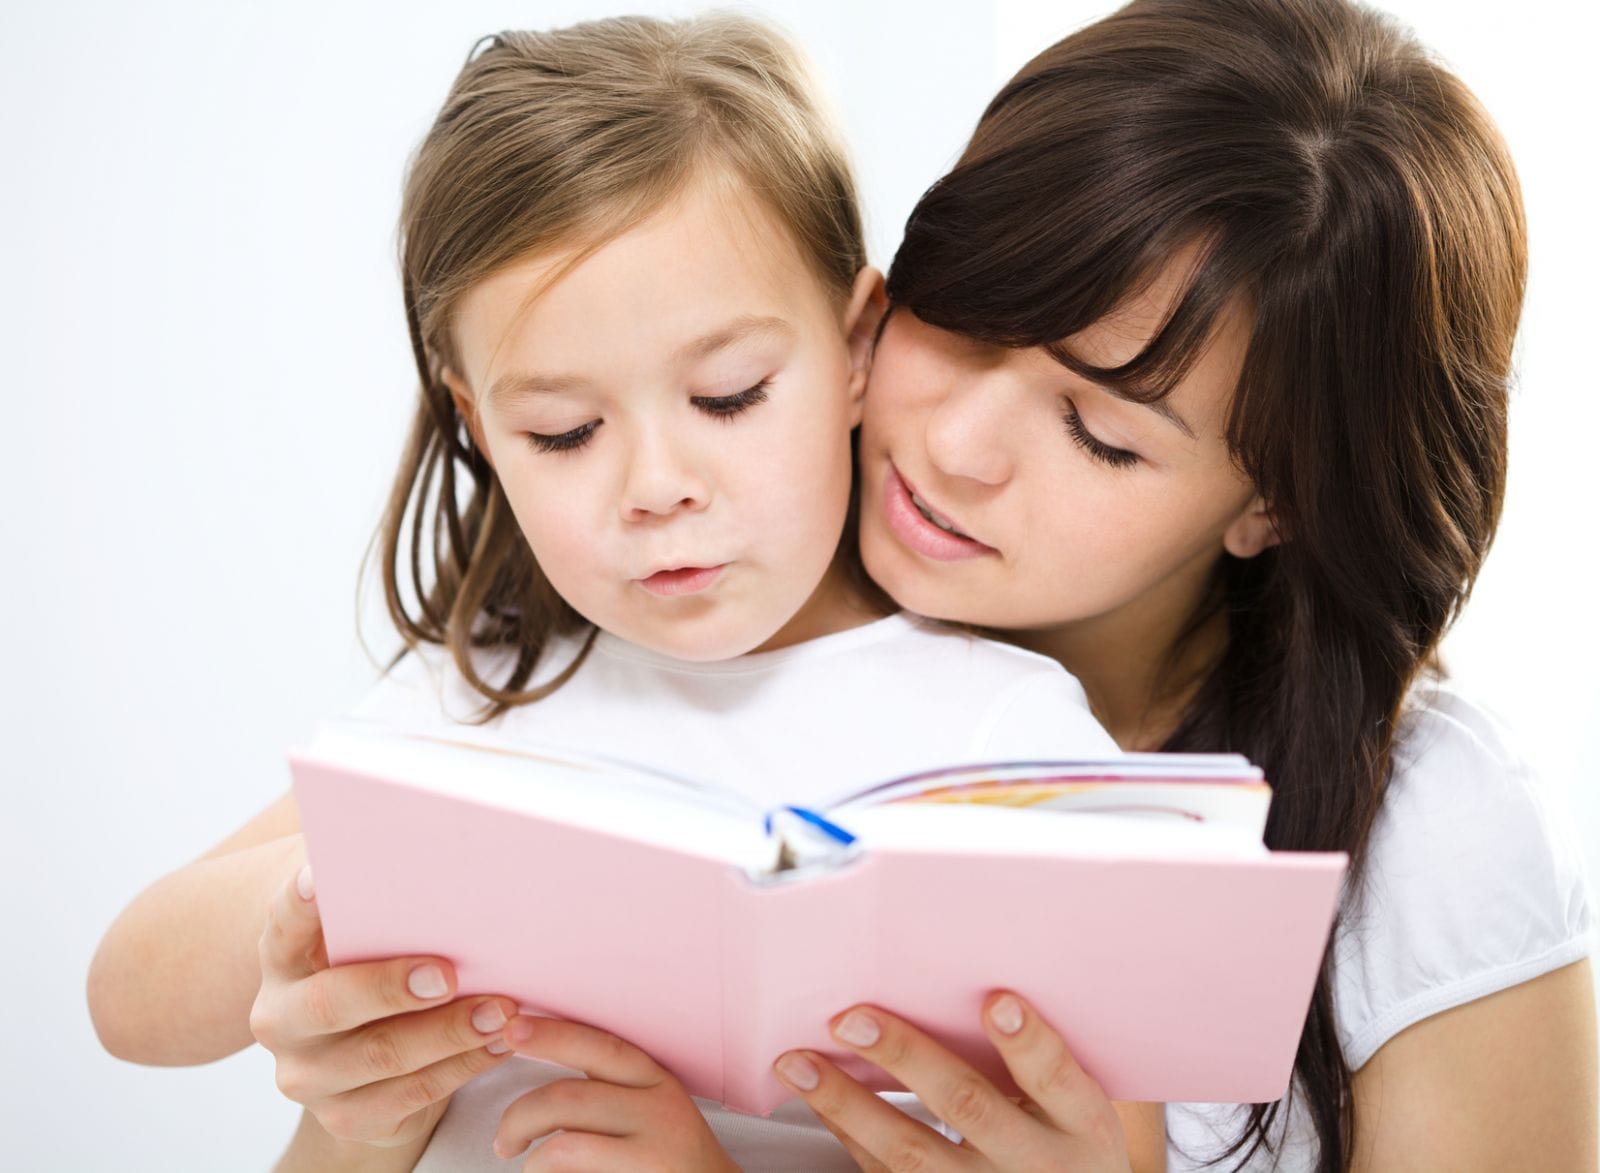 1 số kỹ thuật cha mẹ có thể áp dụng với hầu như các loại sách cho trẻ. 